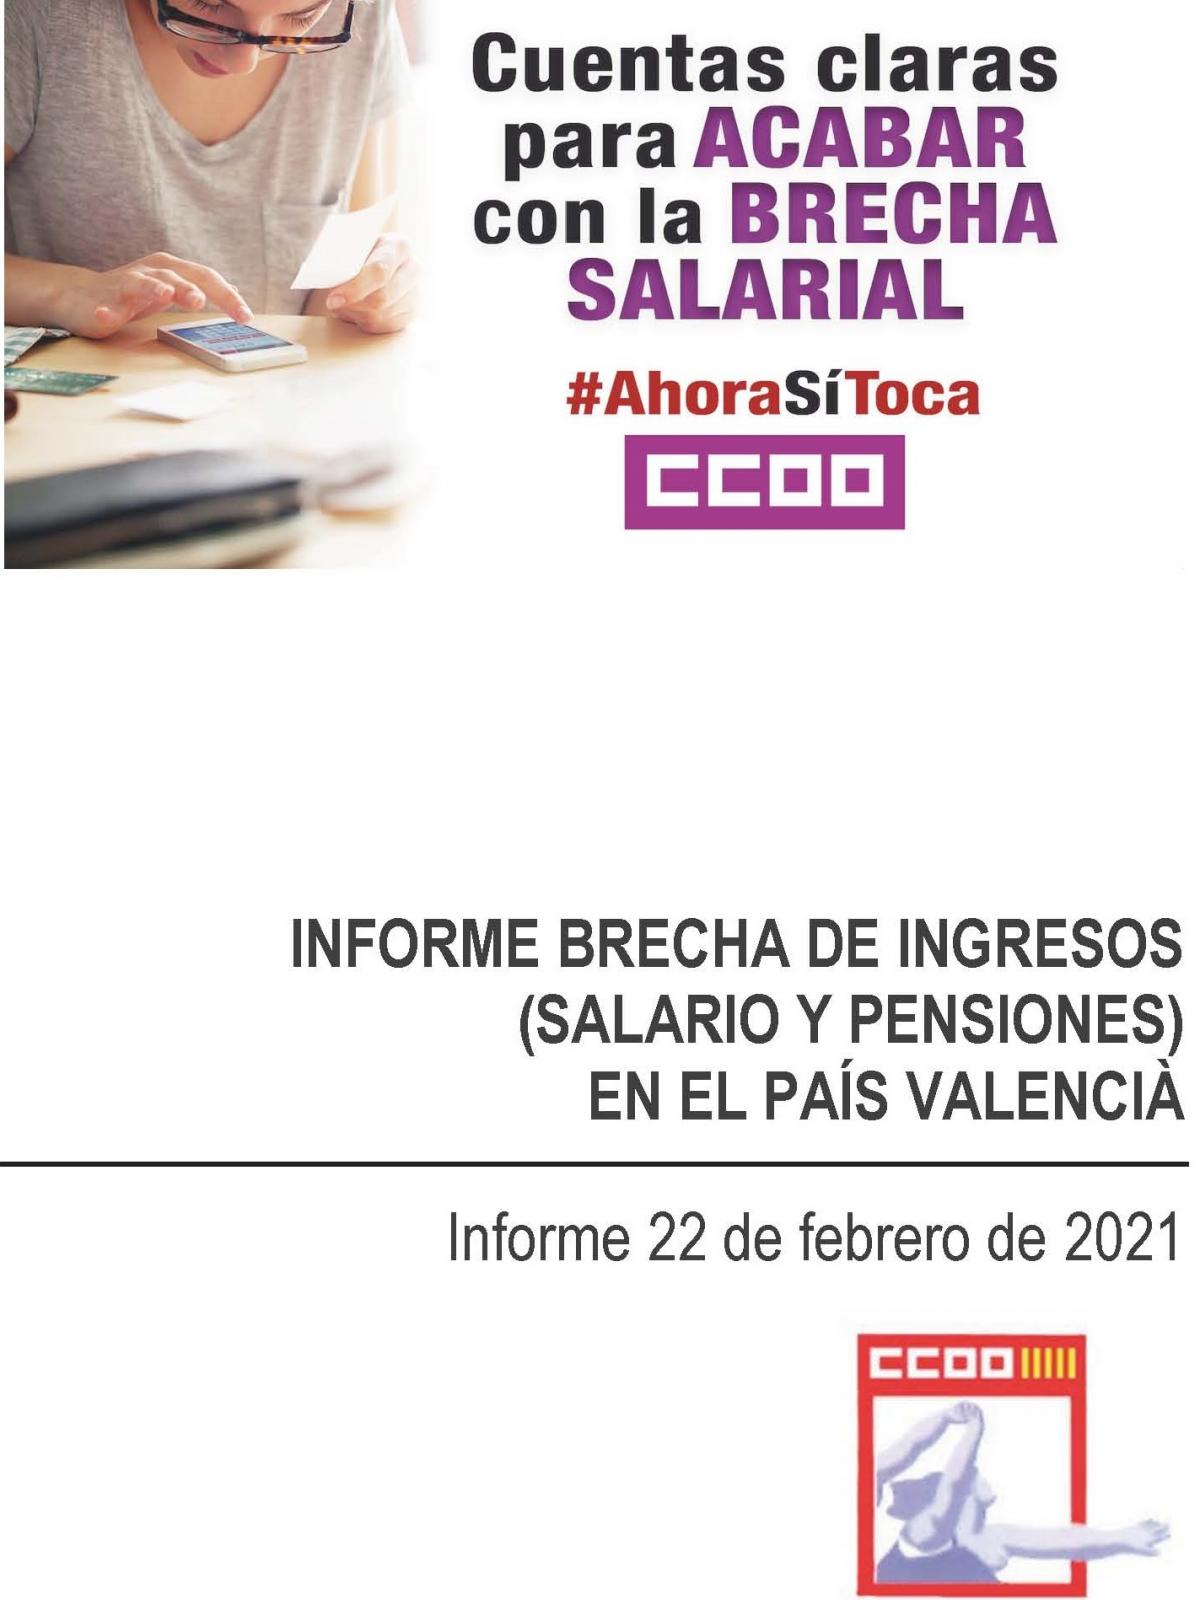 Informe brecha de ingresos (salario y pensiones) en el País Valencià.